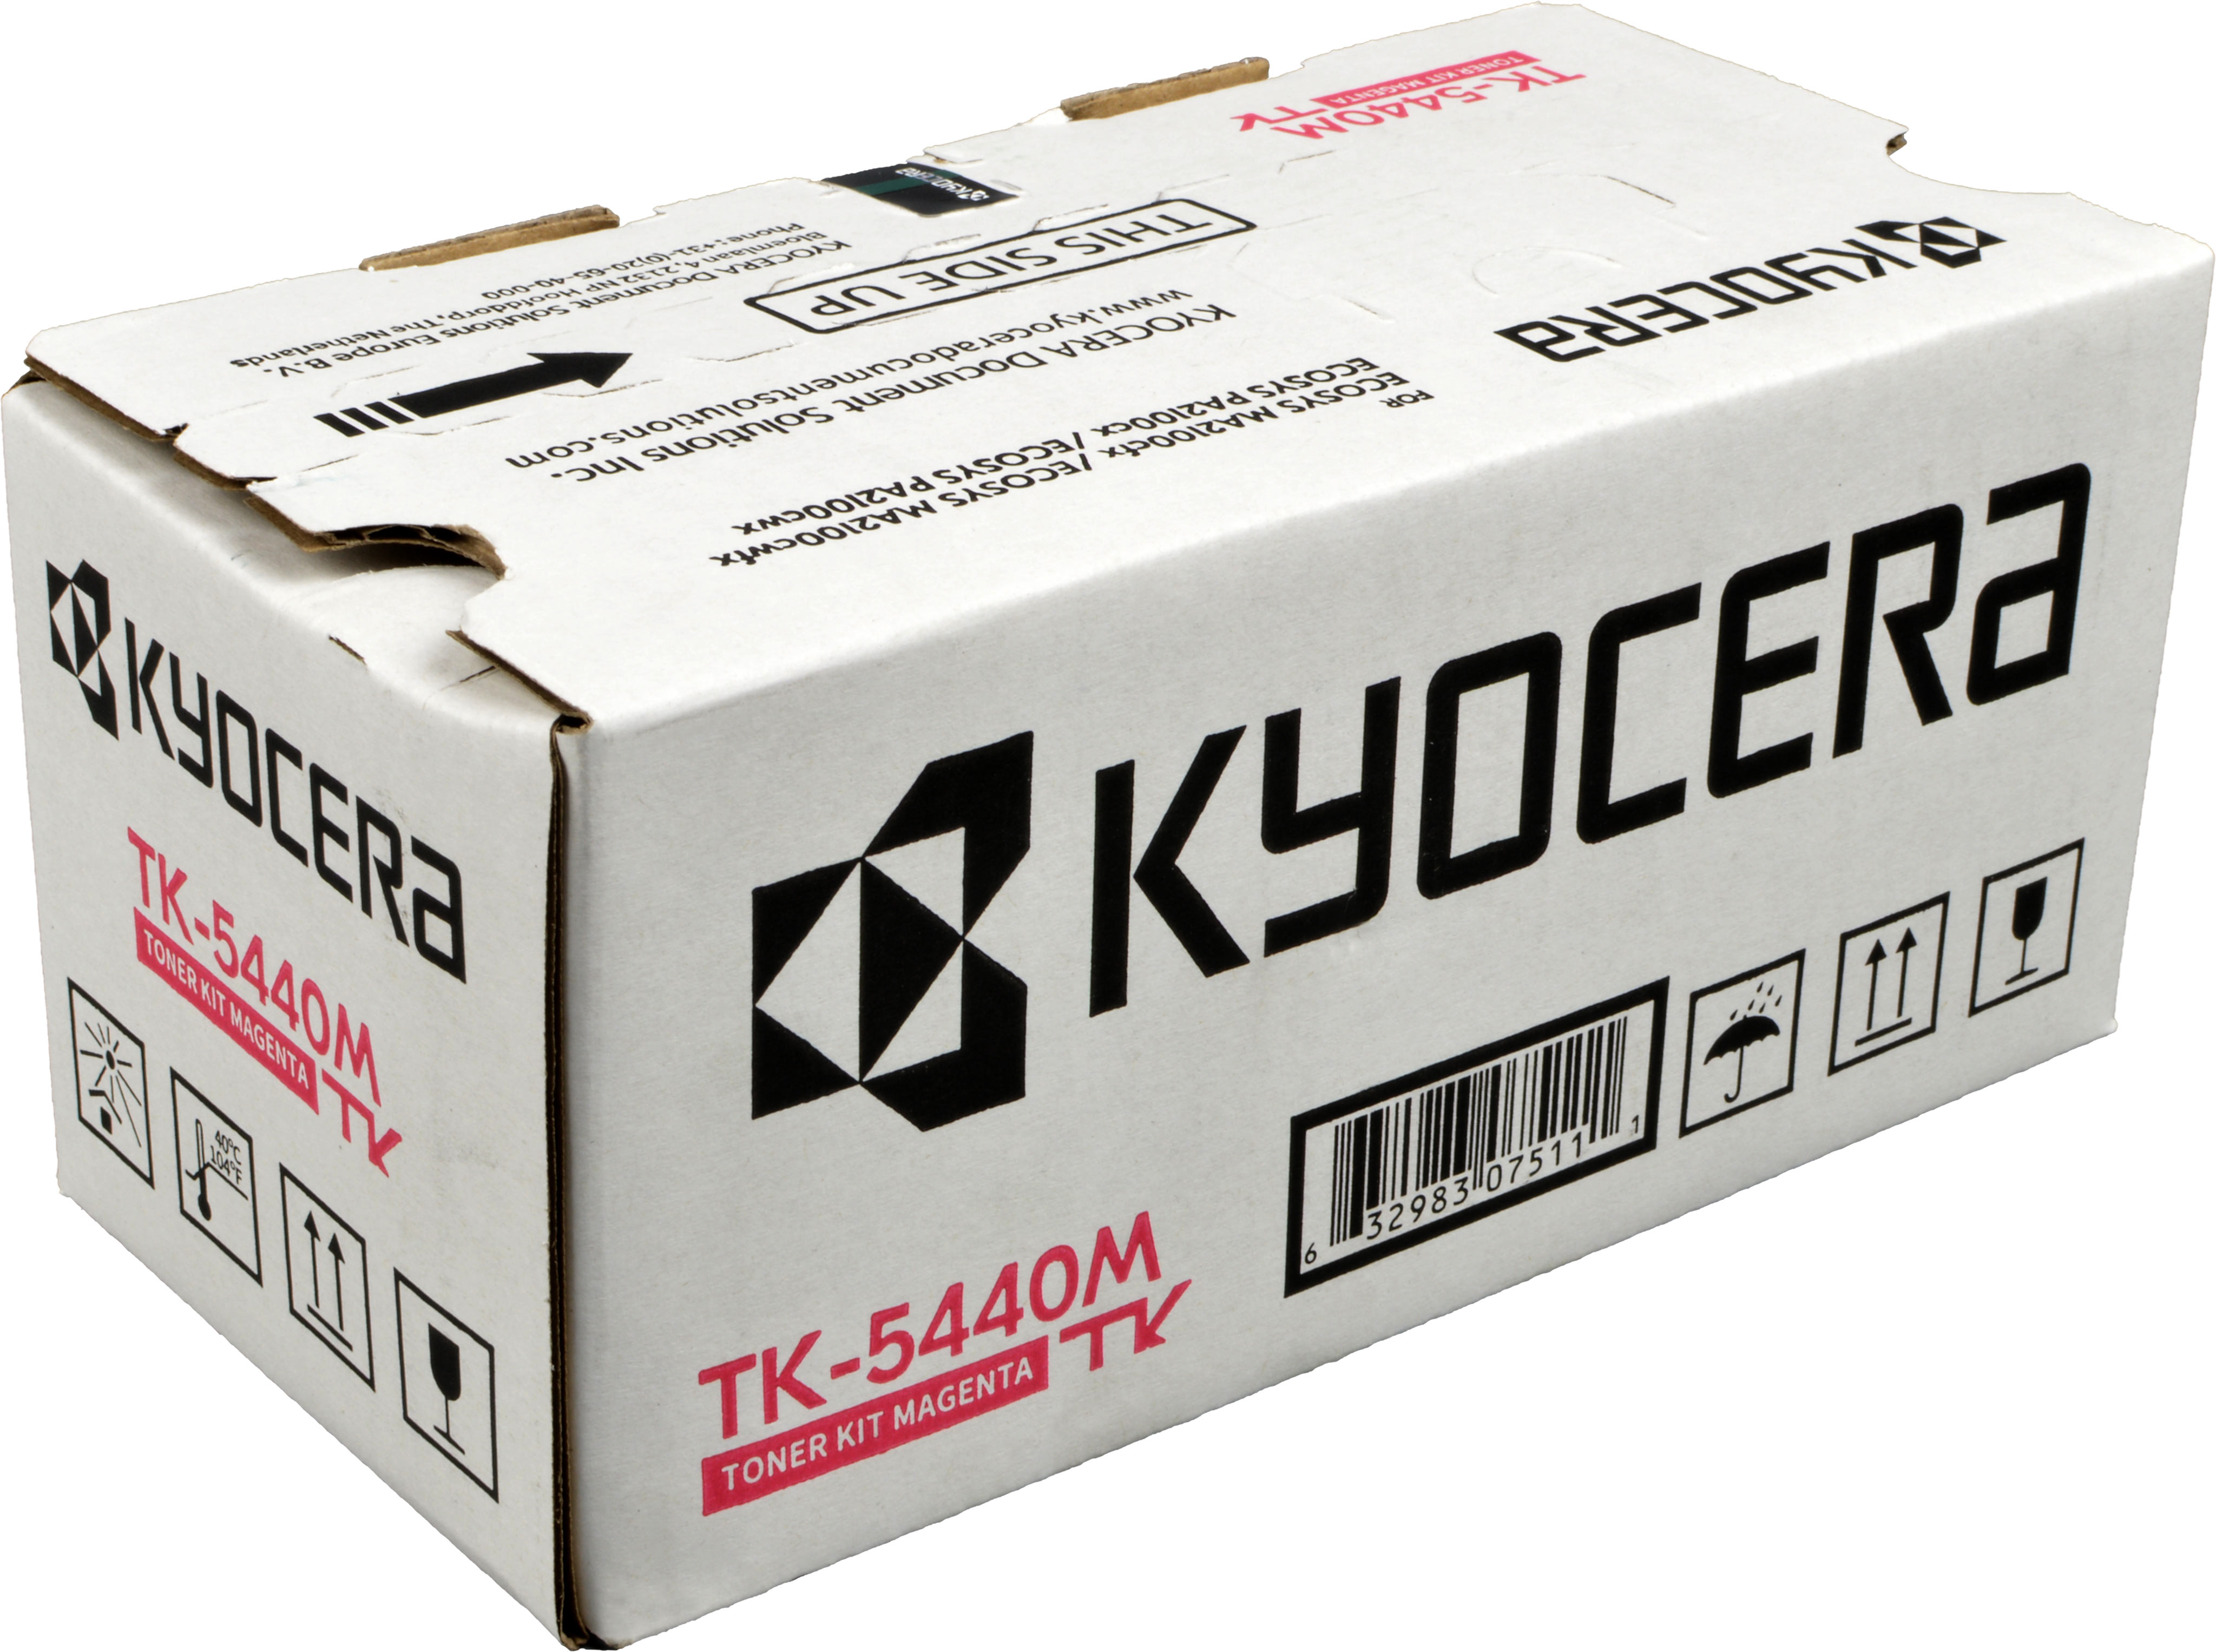 Kyocera Toner TK-5440M  1T0C0ABNL0  magenta